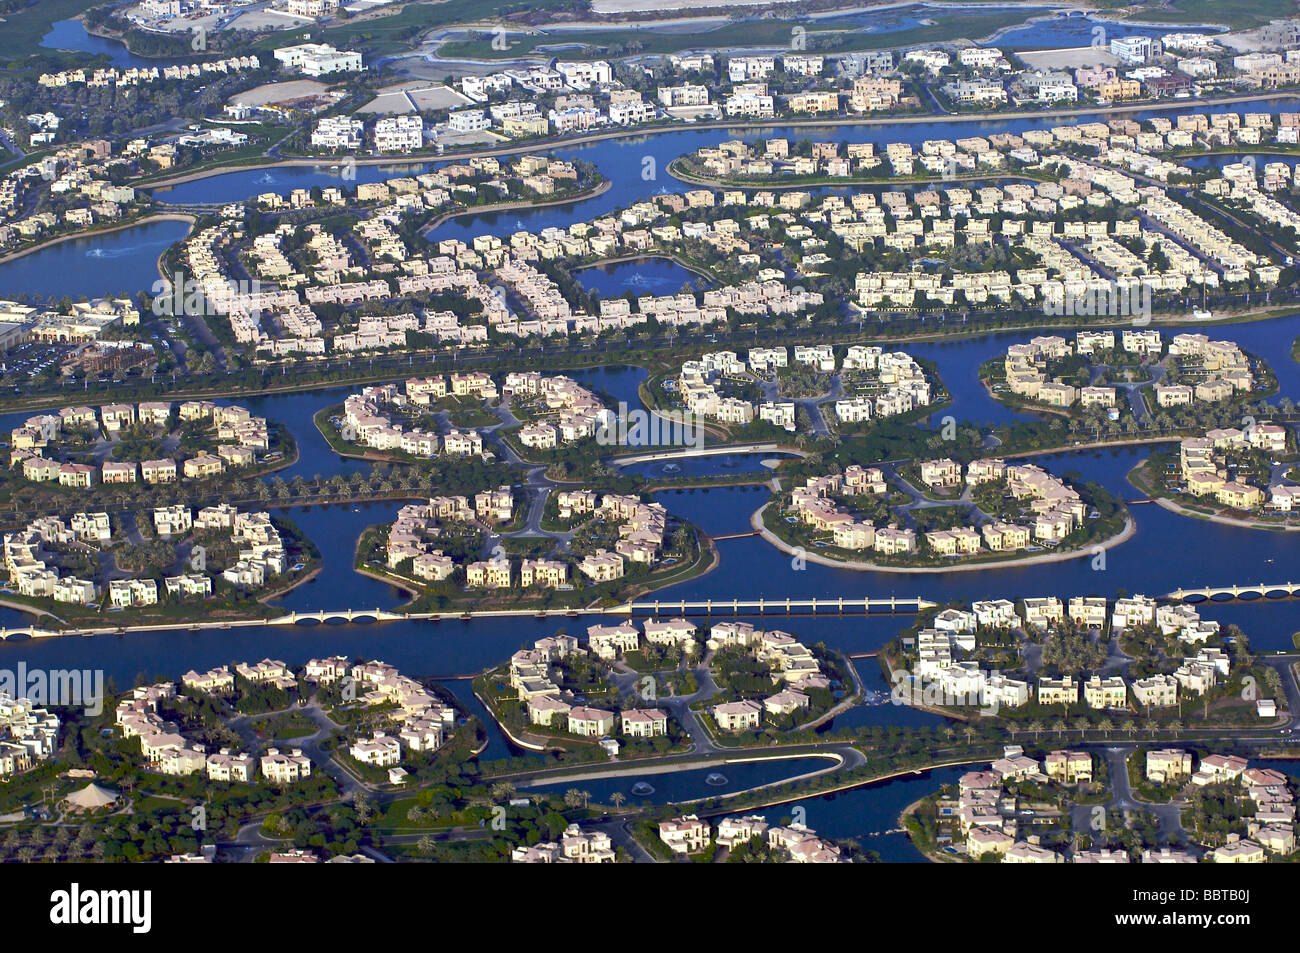 La zone résidentielle de Dubaï Jumeirah Islands Banque D'Images